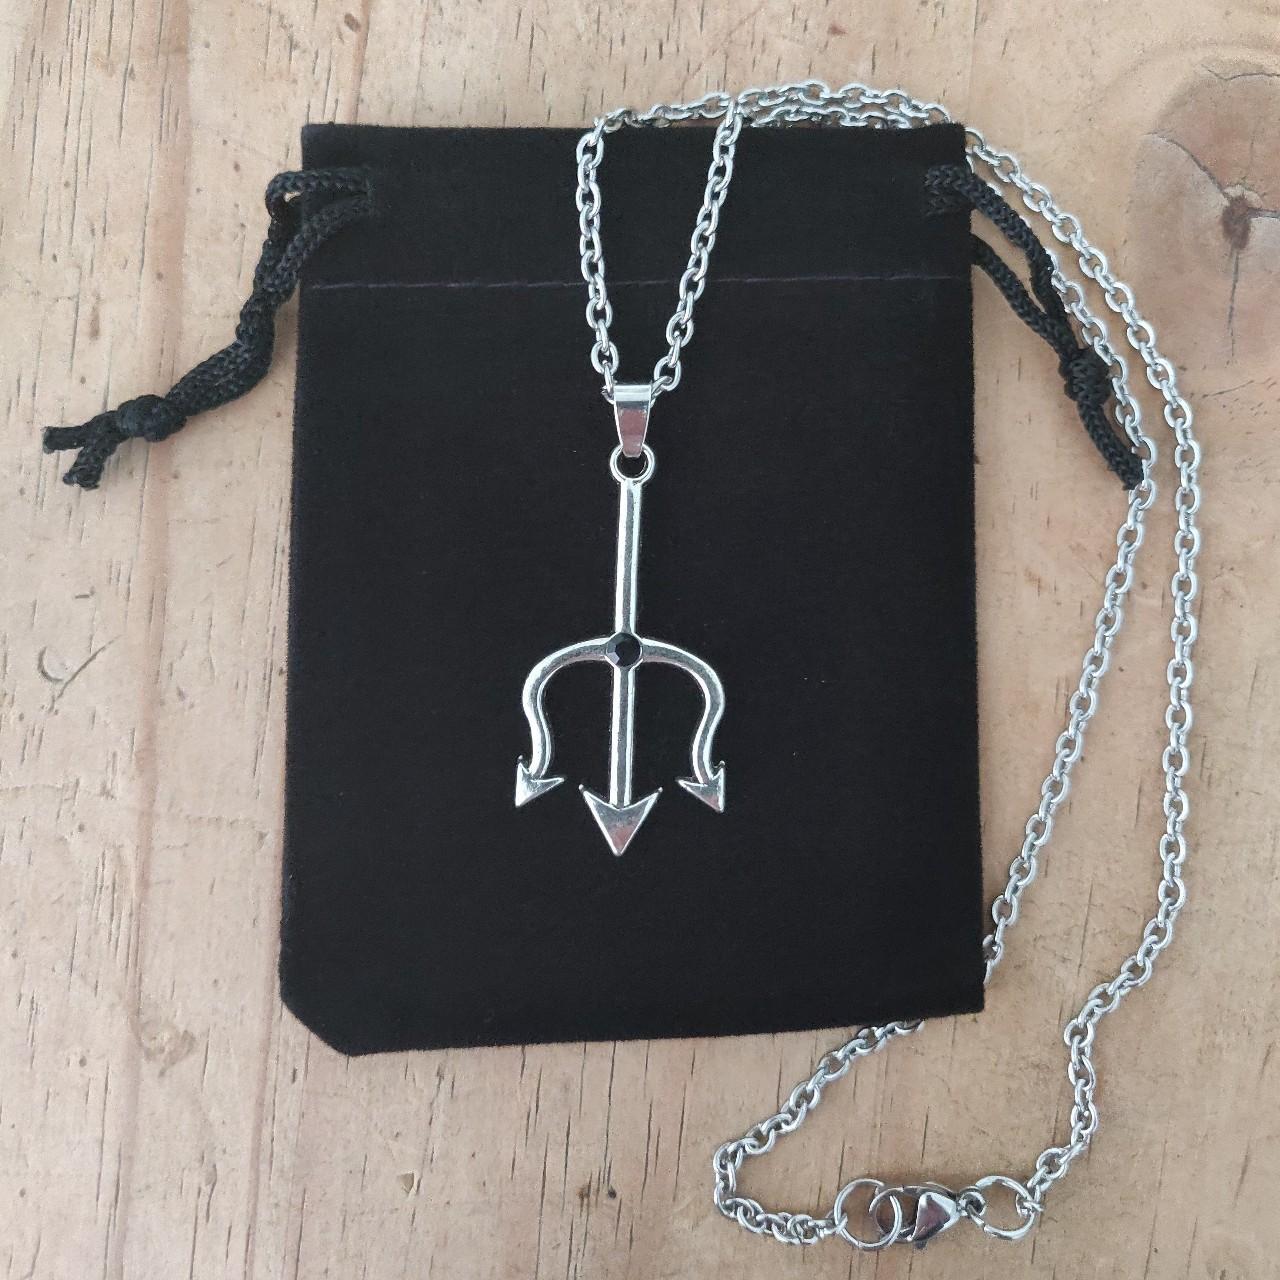 Satan Devil Pitchfork Gothic Witchy Pendant Necklace... - Depop